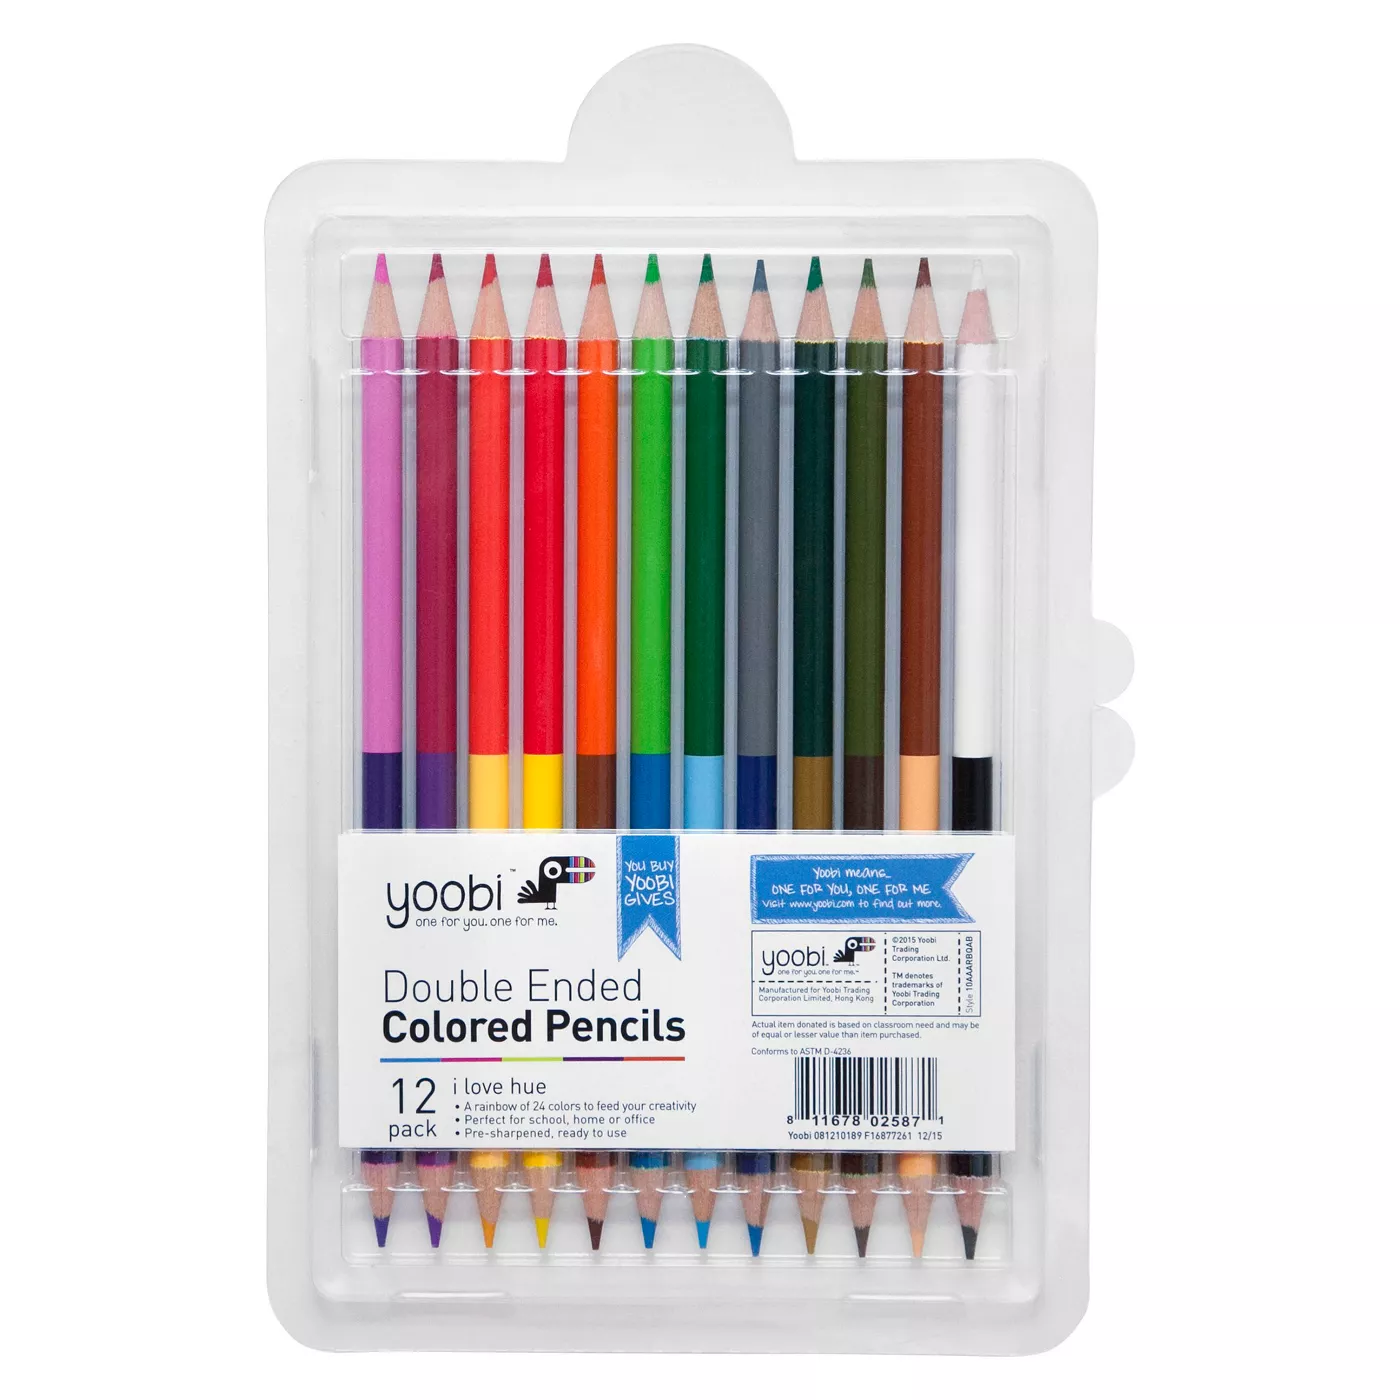 Yoobiâ¢ Double-Ended Colored Pencils - Multicolor, 12pk - image 1 of 3